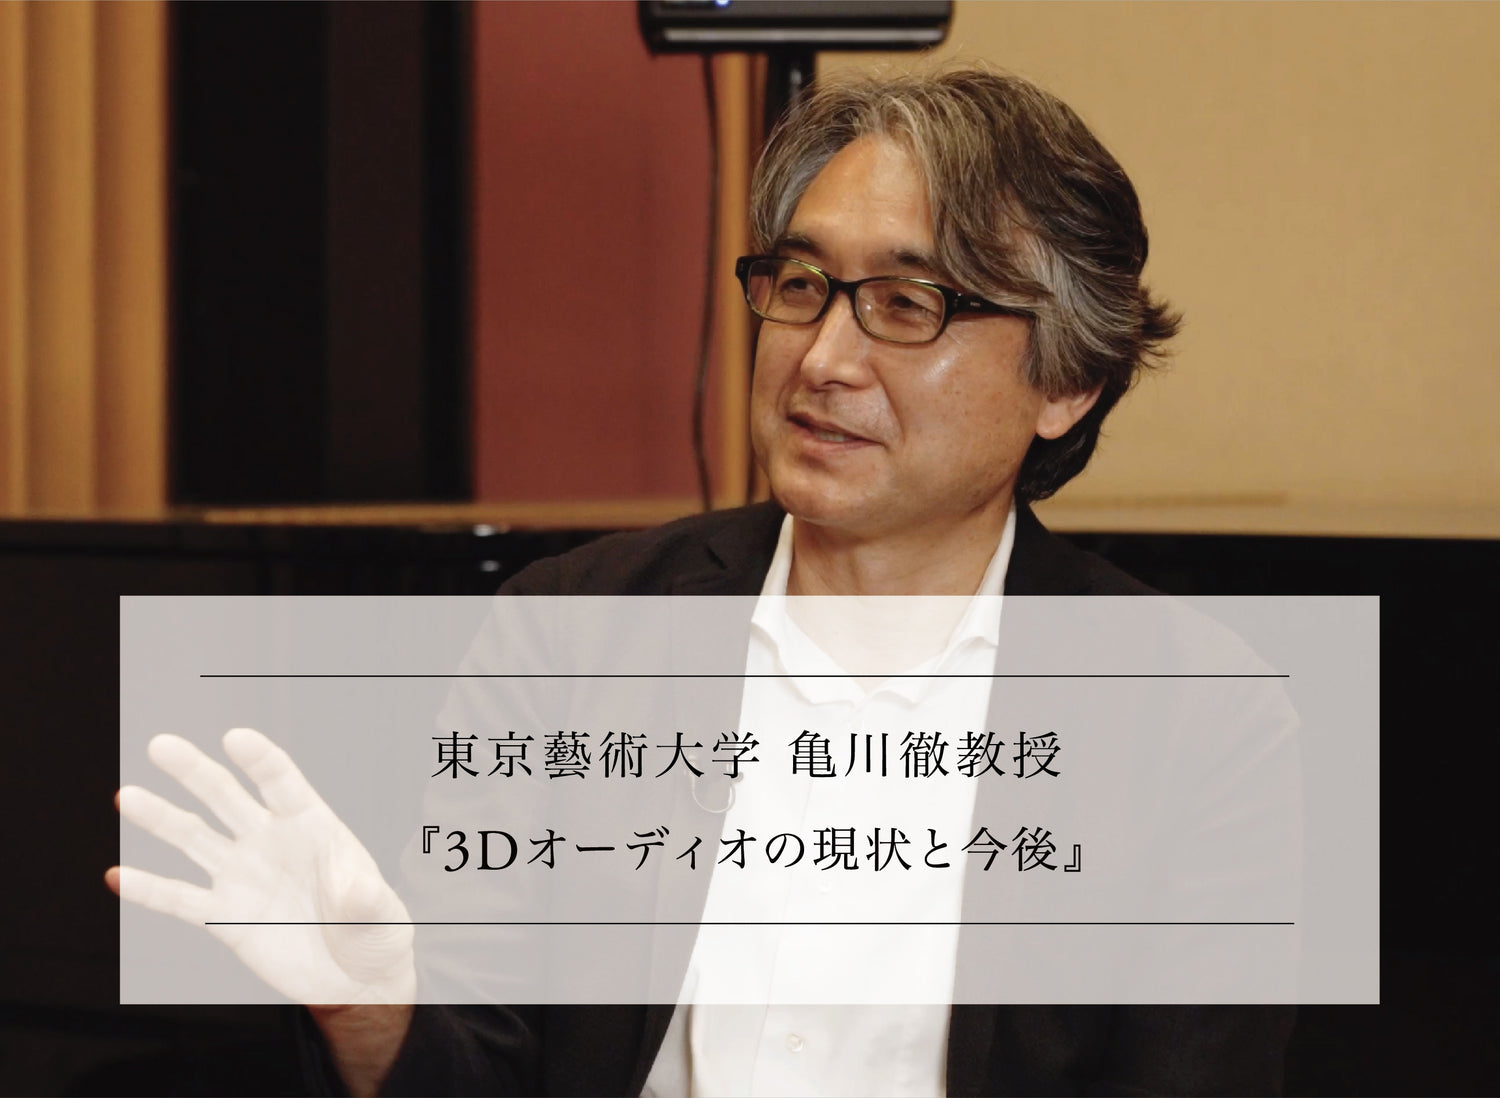 オーディオ・音響分野専門家に訊く vol.2-7 <br>東京藝術大学 亀川徹教授<br>『3Dオーディオの現状と今後』